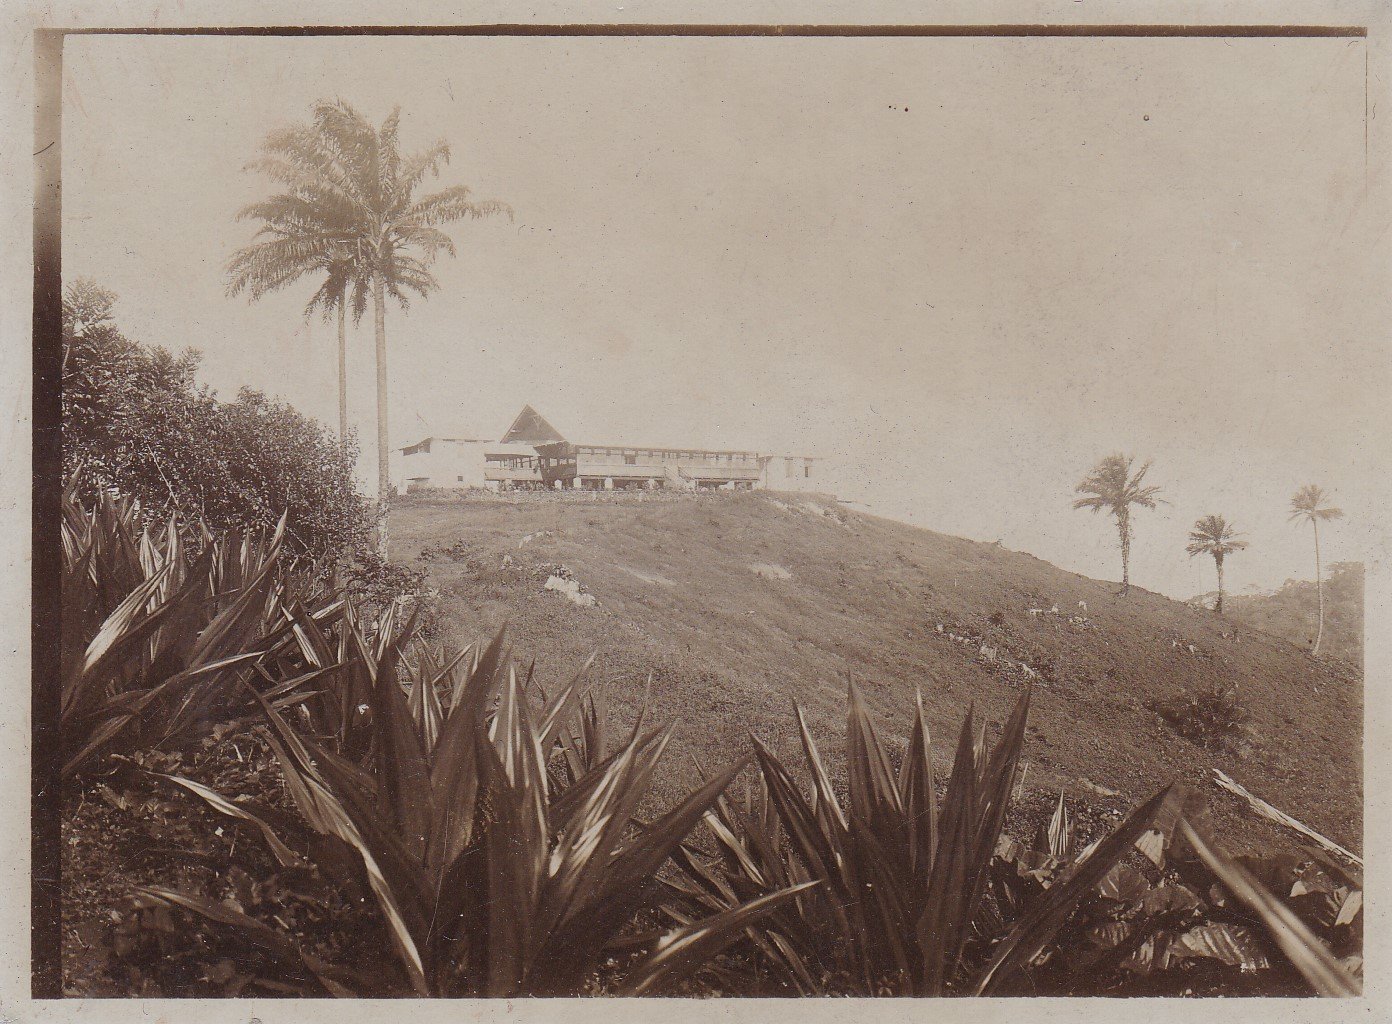   9 Original-Photographien aus dem ehemals deutschen Kolonialgebiet in Kamerun. Historische Photographien mit Ansichten von Plantagen und Umgebung. 